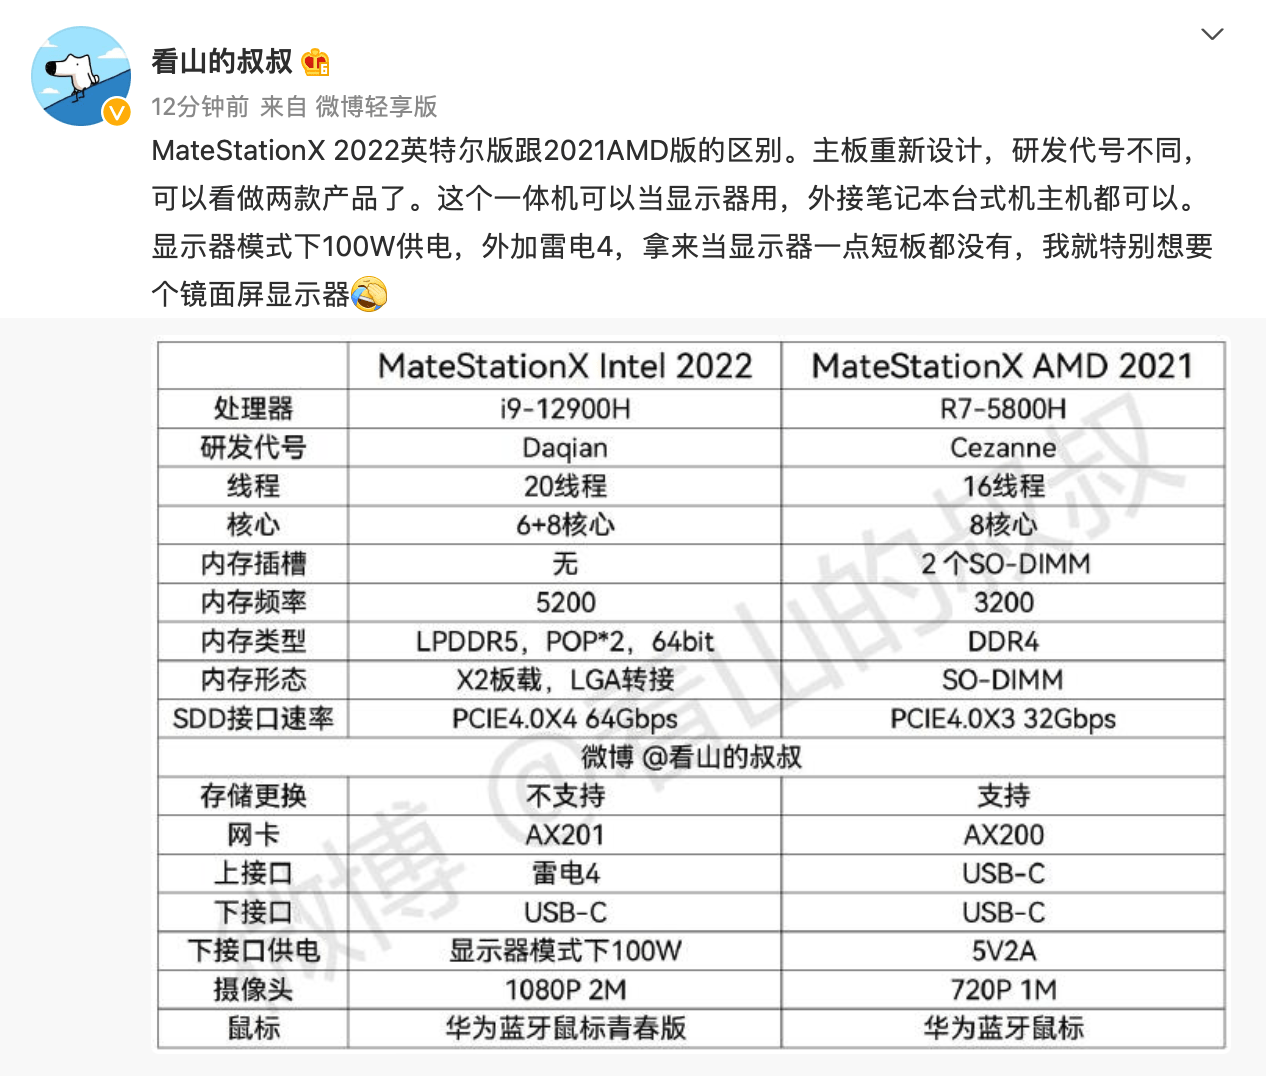 华为手机详细参数设置
:华为 MateStation X 2022 一体机详细参数曝光